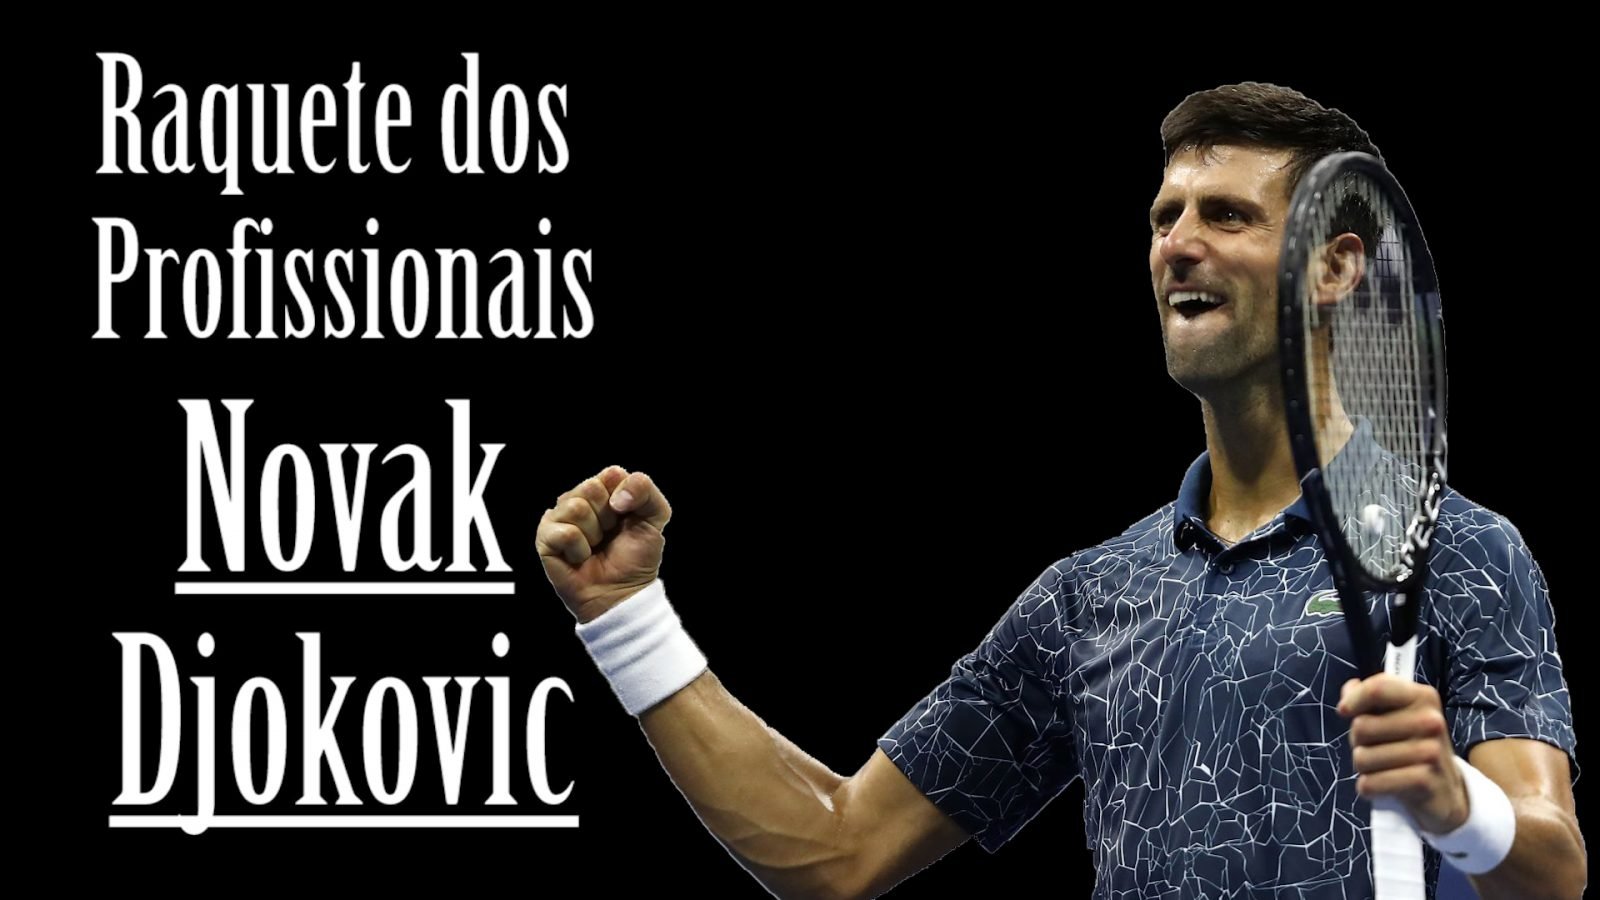 Raquete dos Profissionais - Novak Djokovic